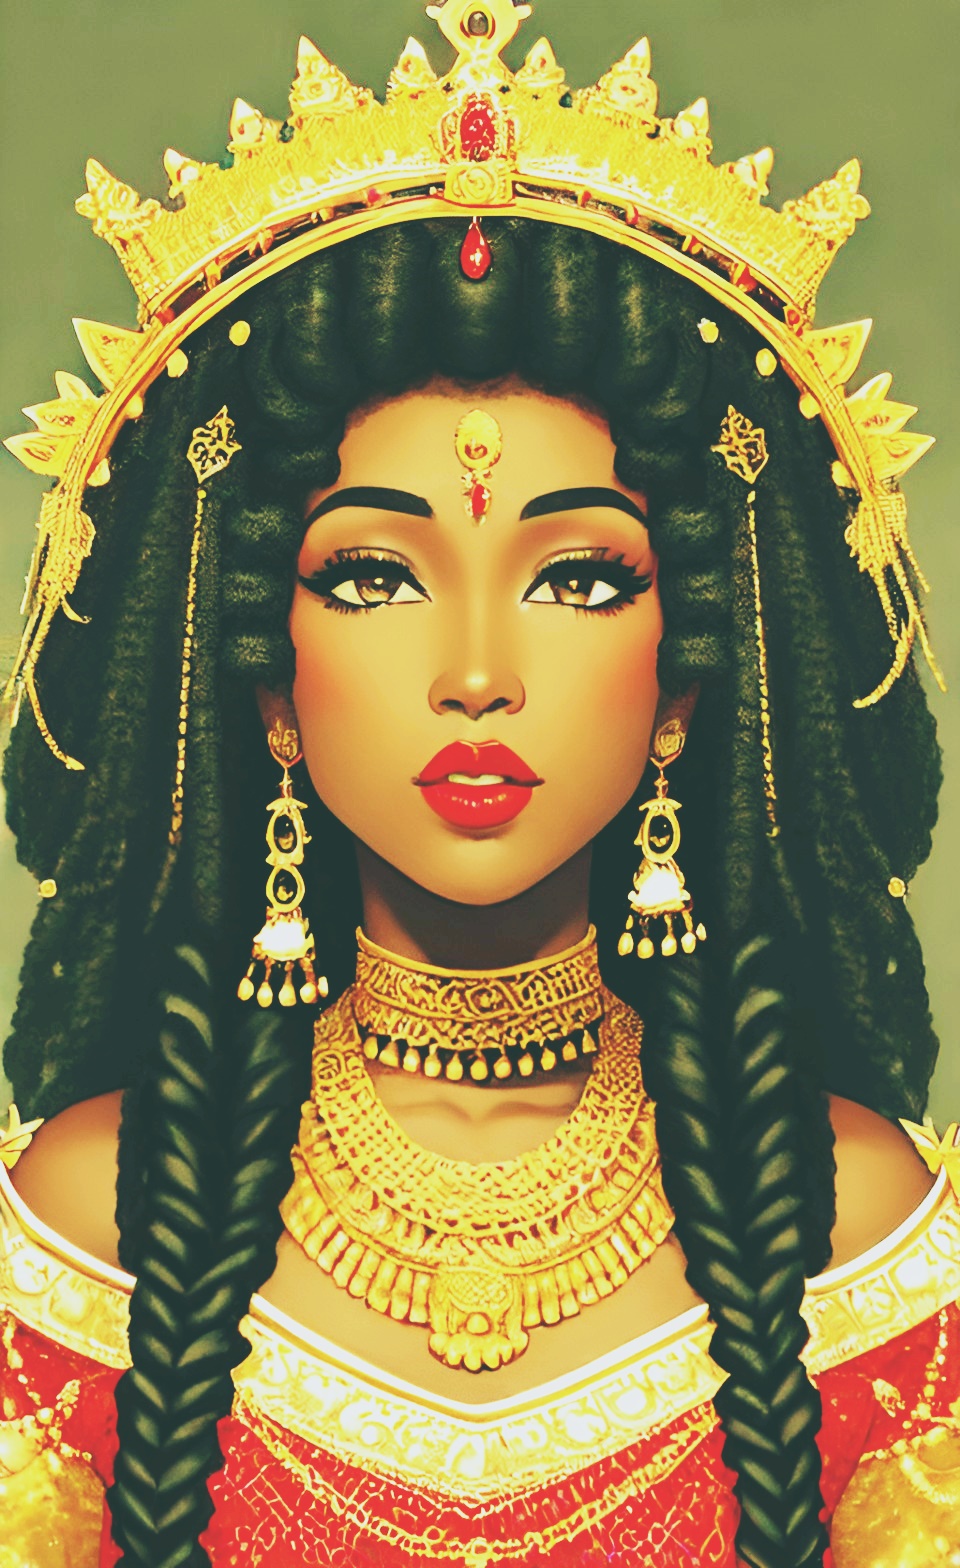 Mixed-race Queen of SHEBA art work Queeno10